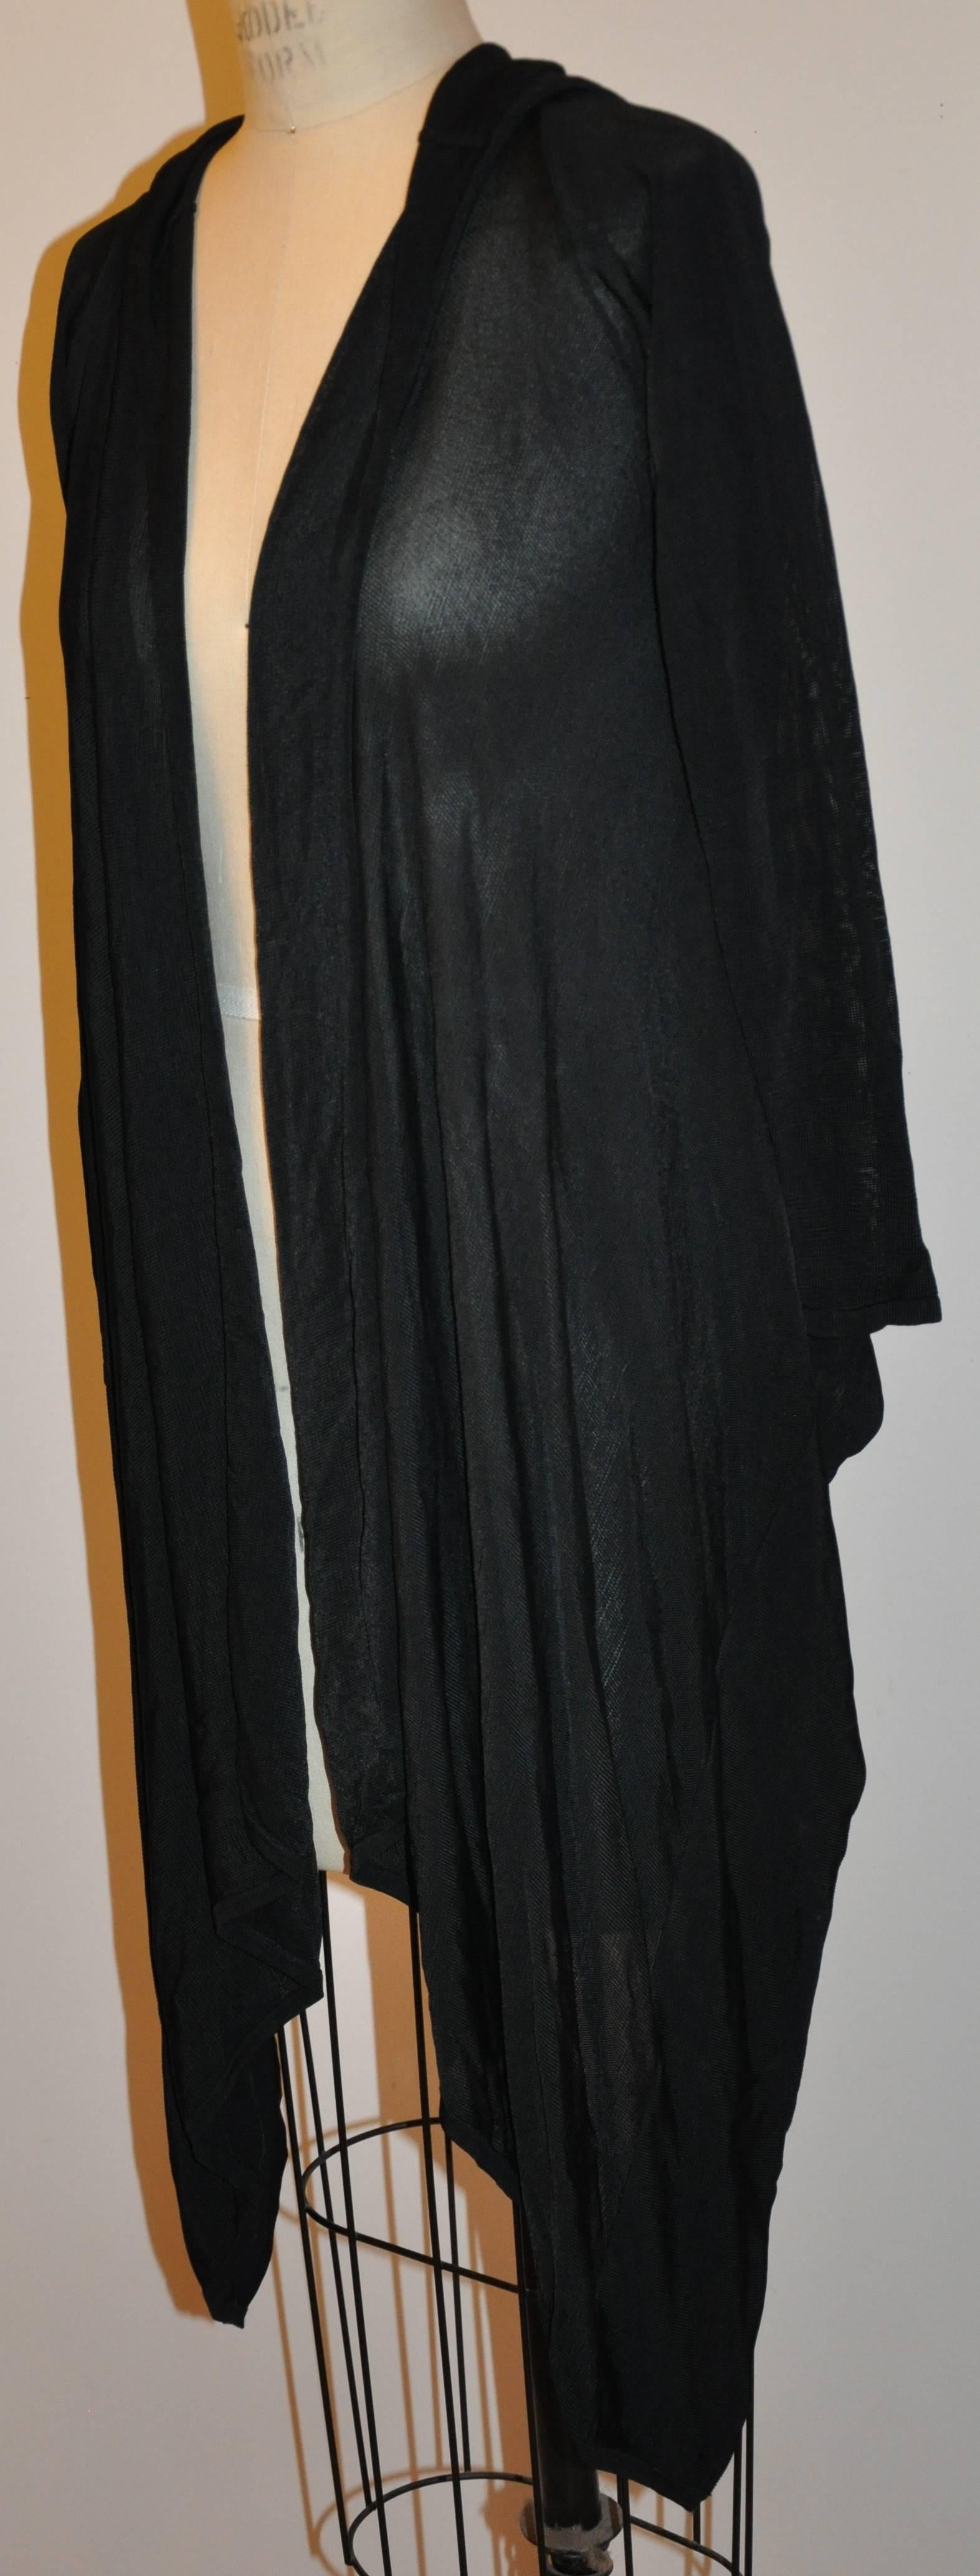        Le cardigan ouvert en jersey noir à coupe asymétrique de Herve Leger se drape merveilleusement sur le corsage lorsqu'il est porté. La longueur du dos mesure 22